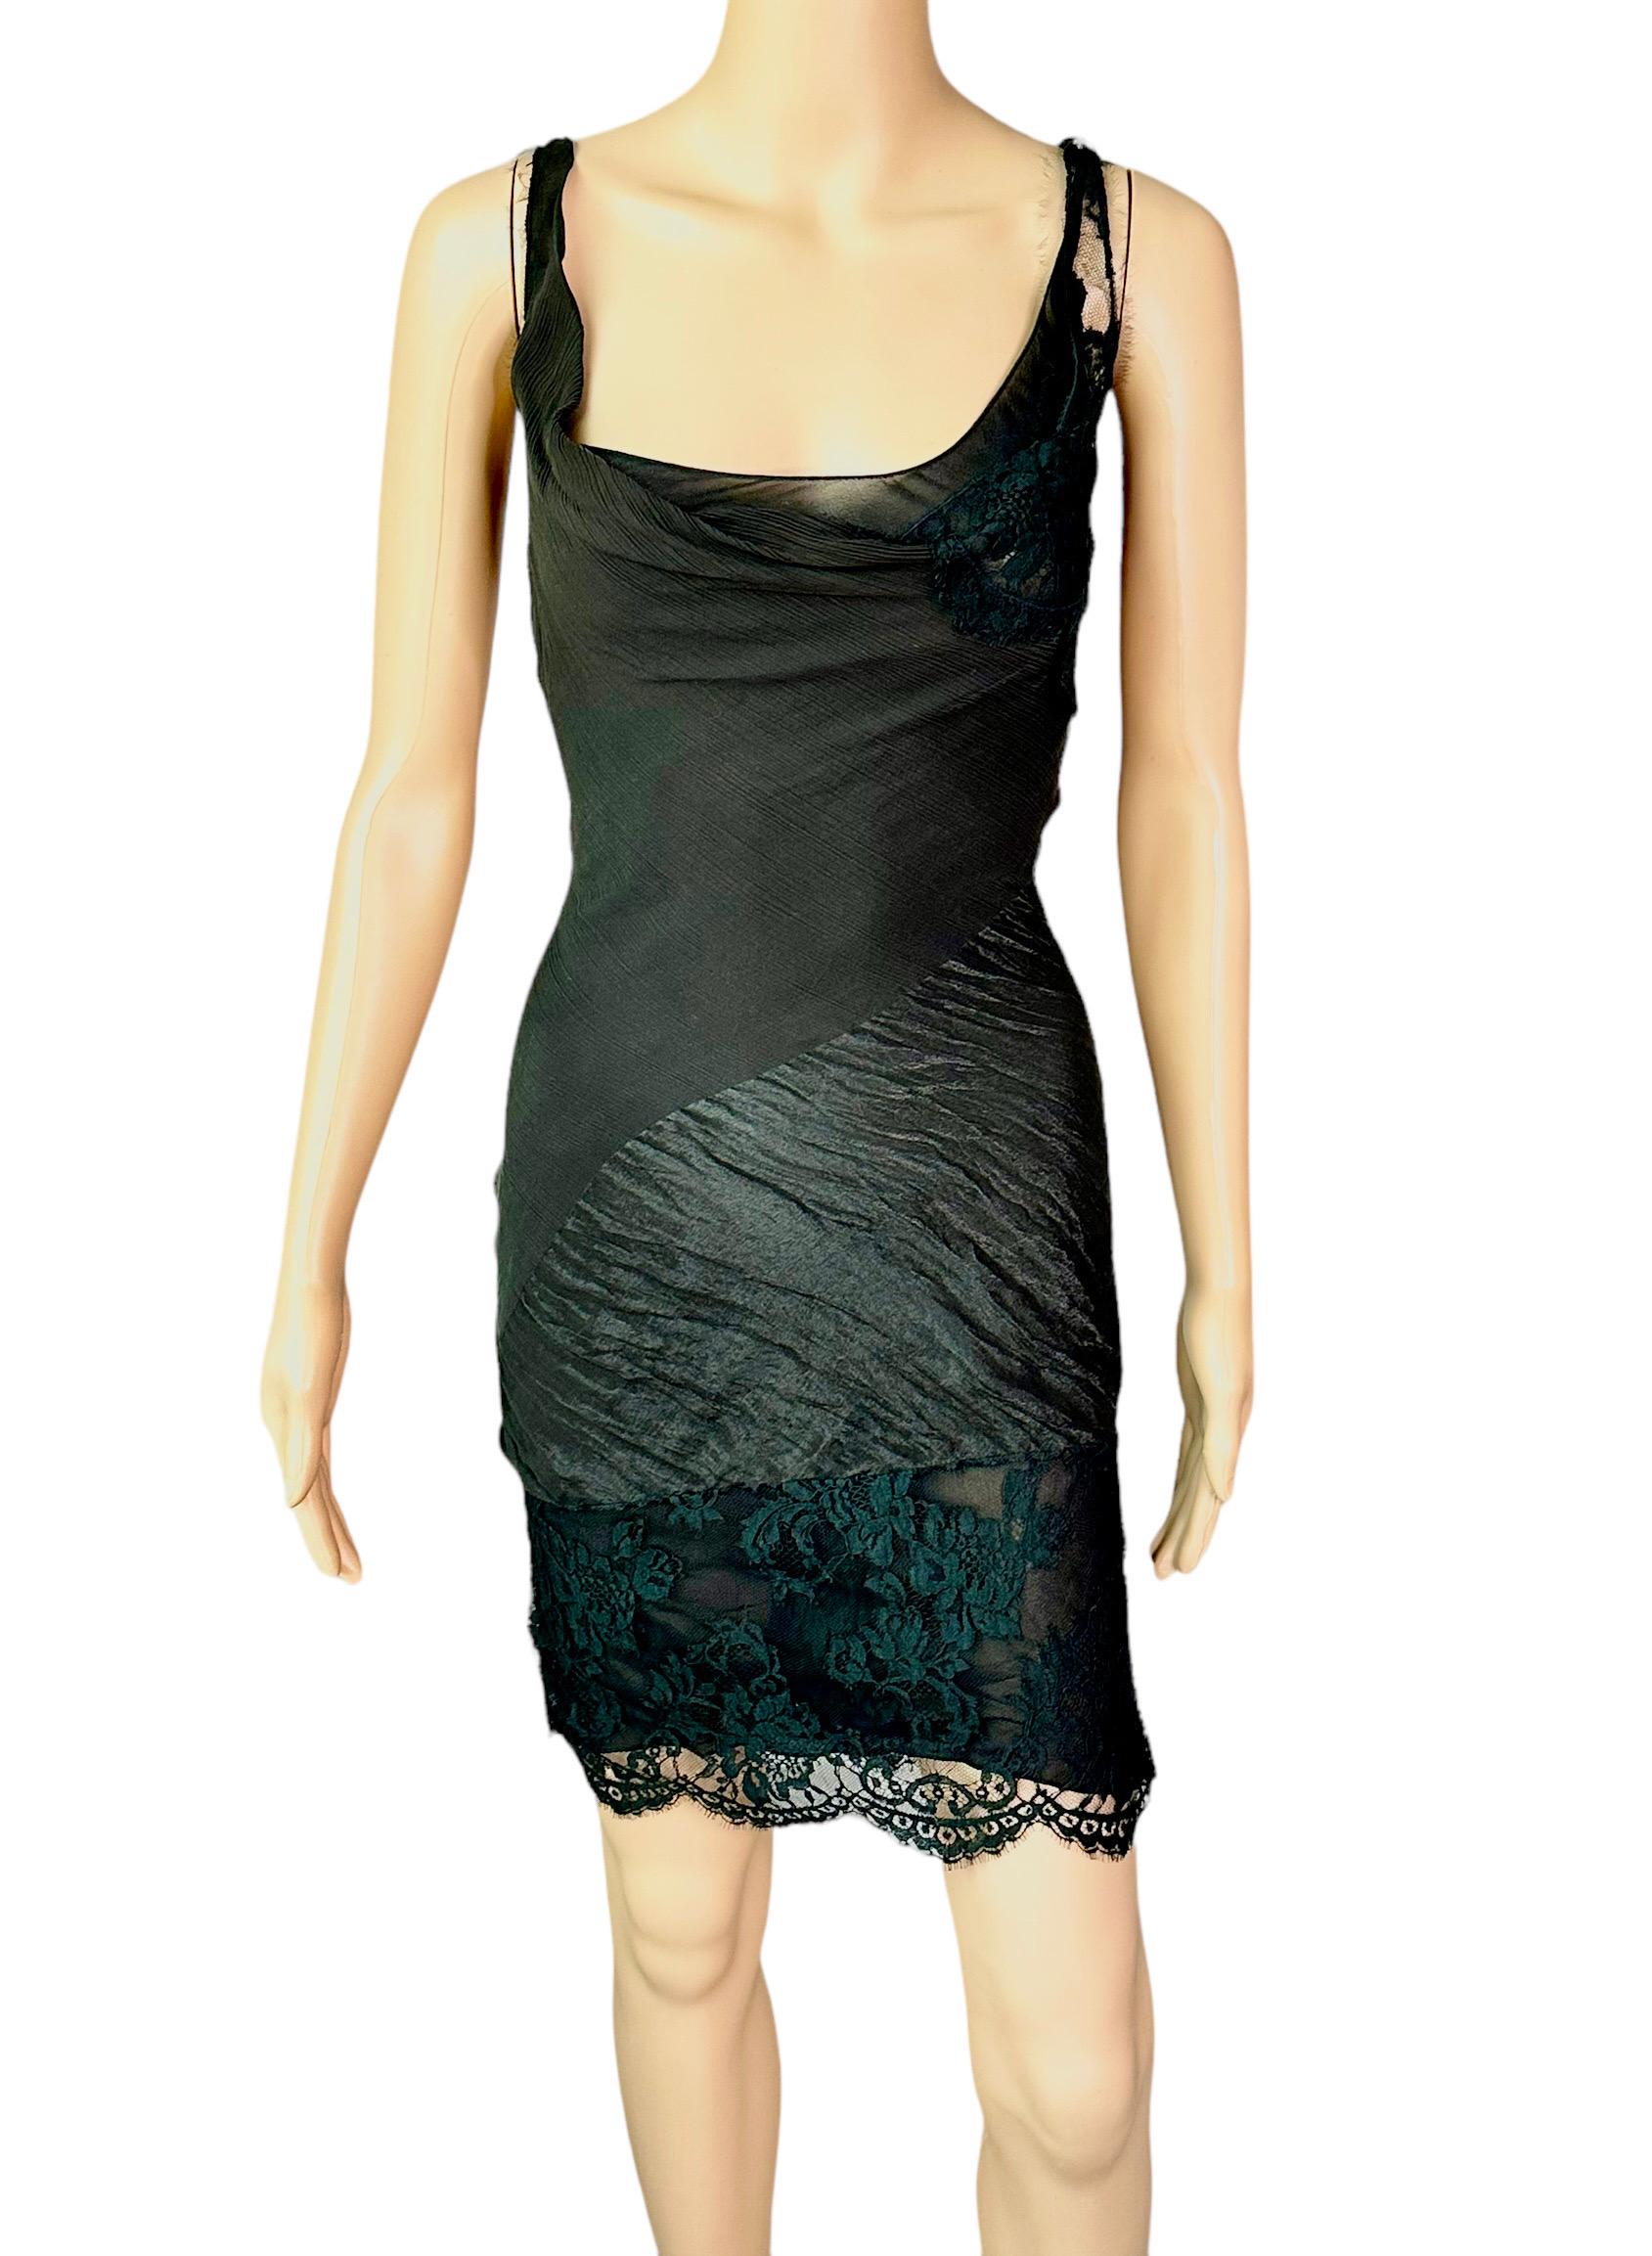 John Galliano F/W 2006 Semi-Sheer Lace Knit Slip Black 2 Piece Mini Dress 7